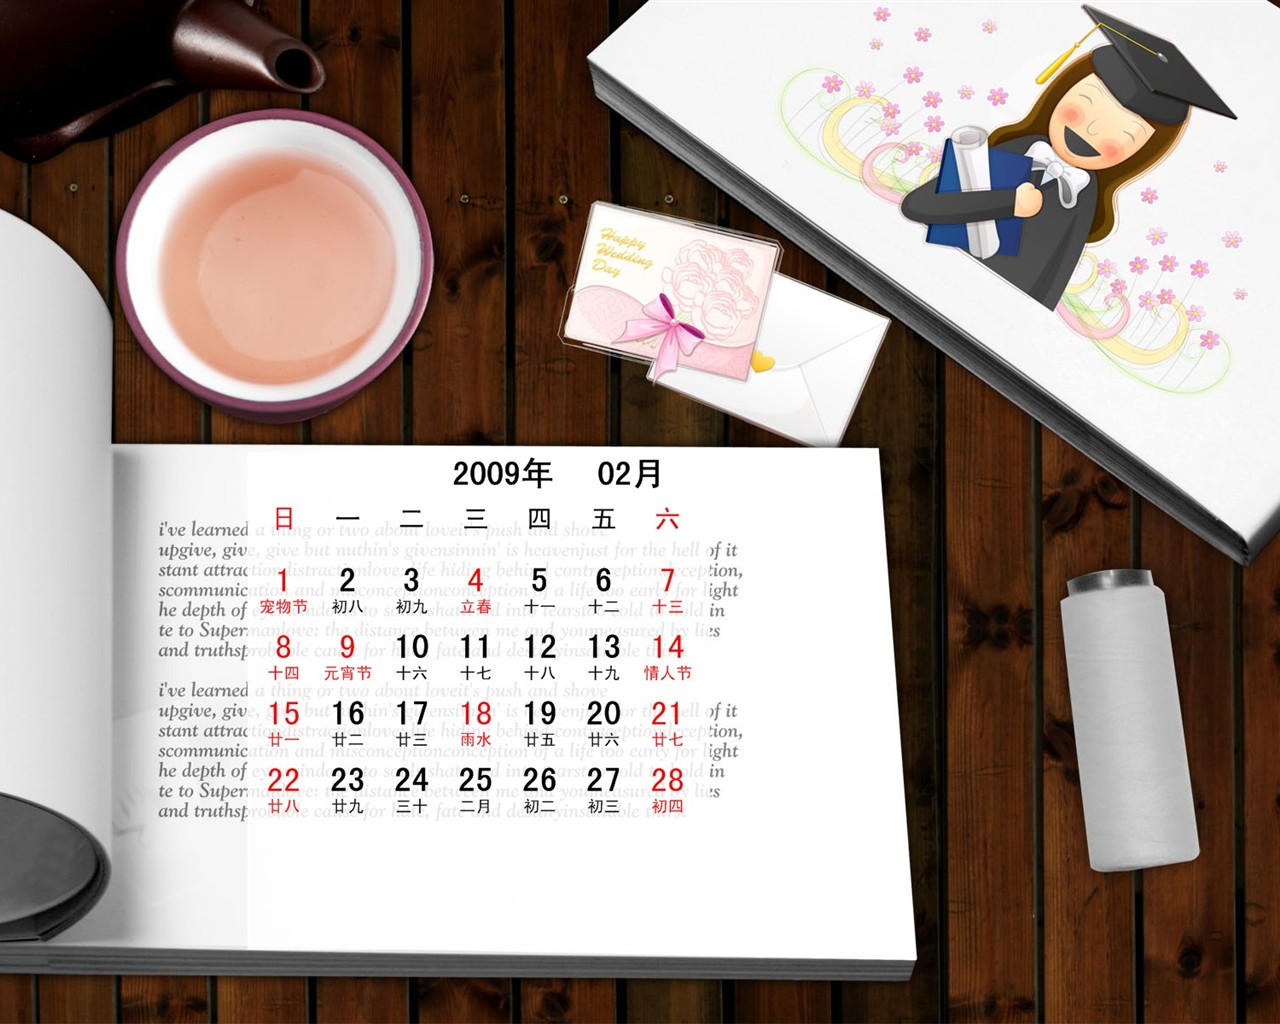 PaperArt 09 años en el fondo de pantalla de calendario febrero #31 - 1280x1024